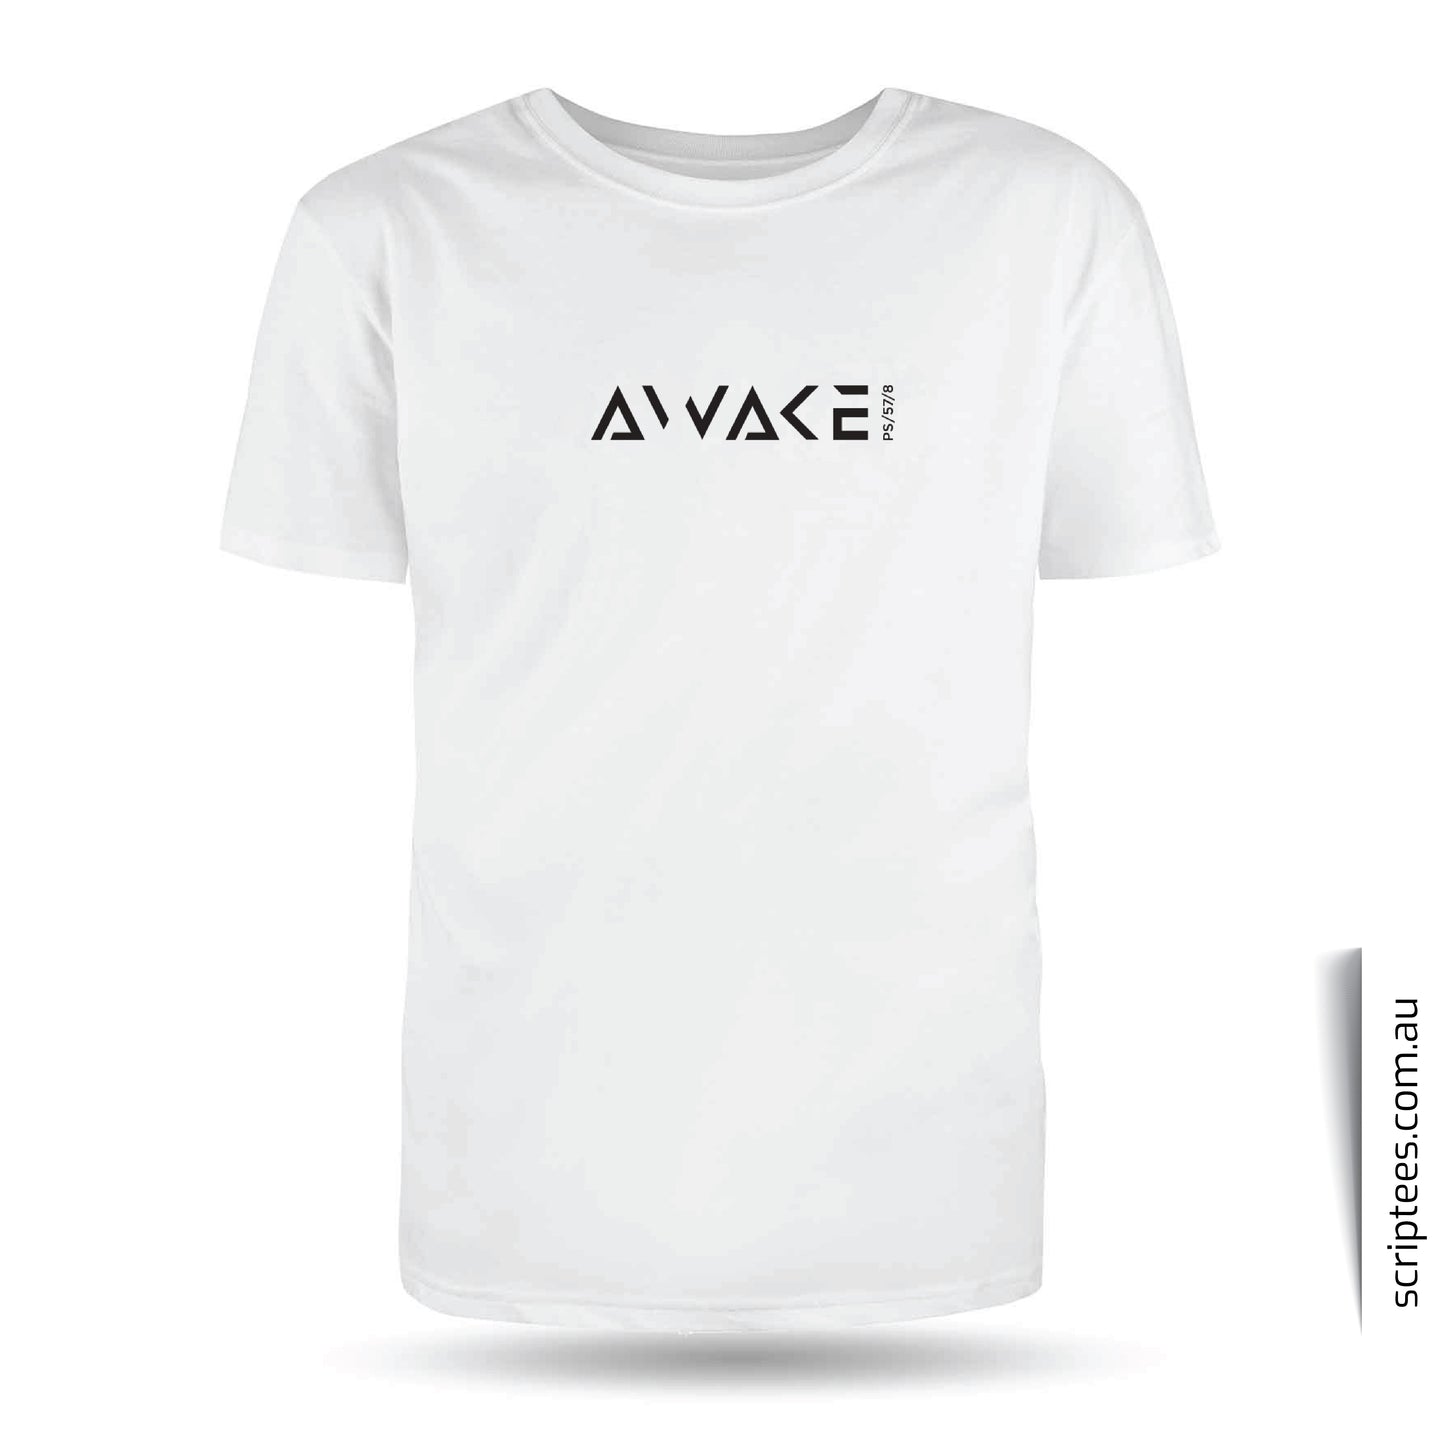 Awake White